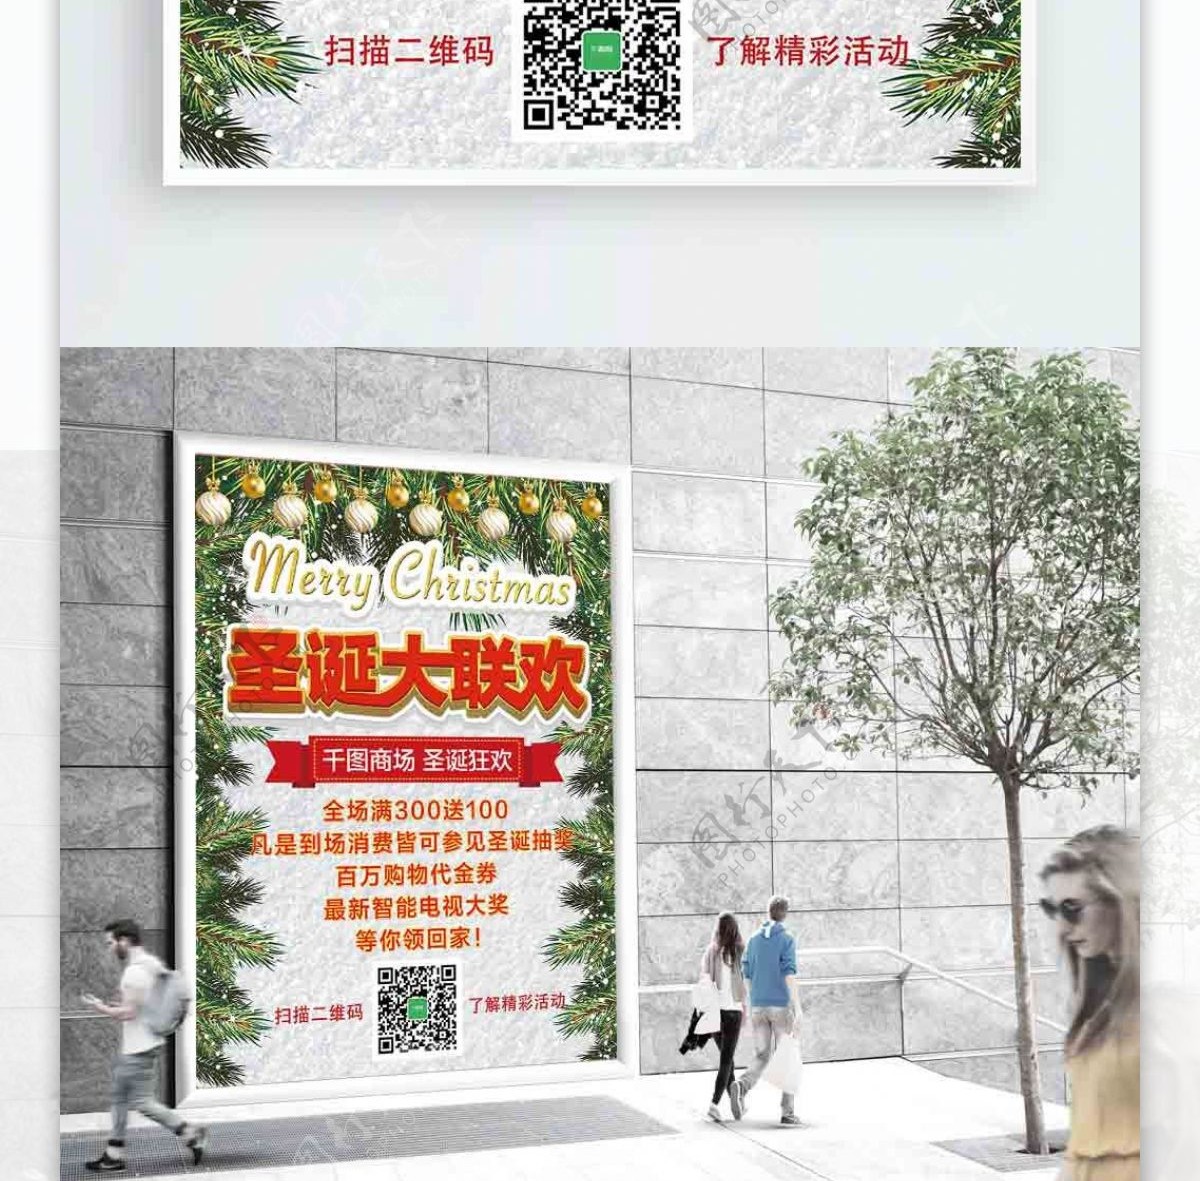 商场圣诞活动促销圣诞白色松枝吊坠宣传海报